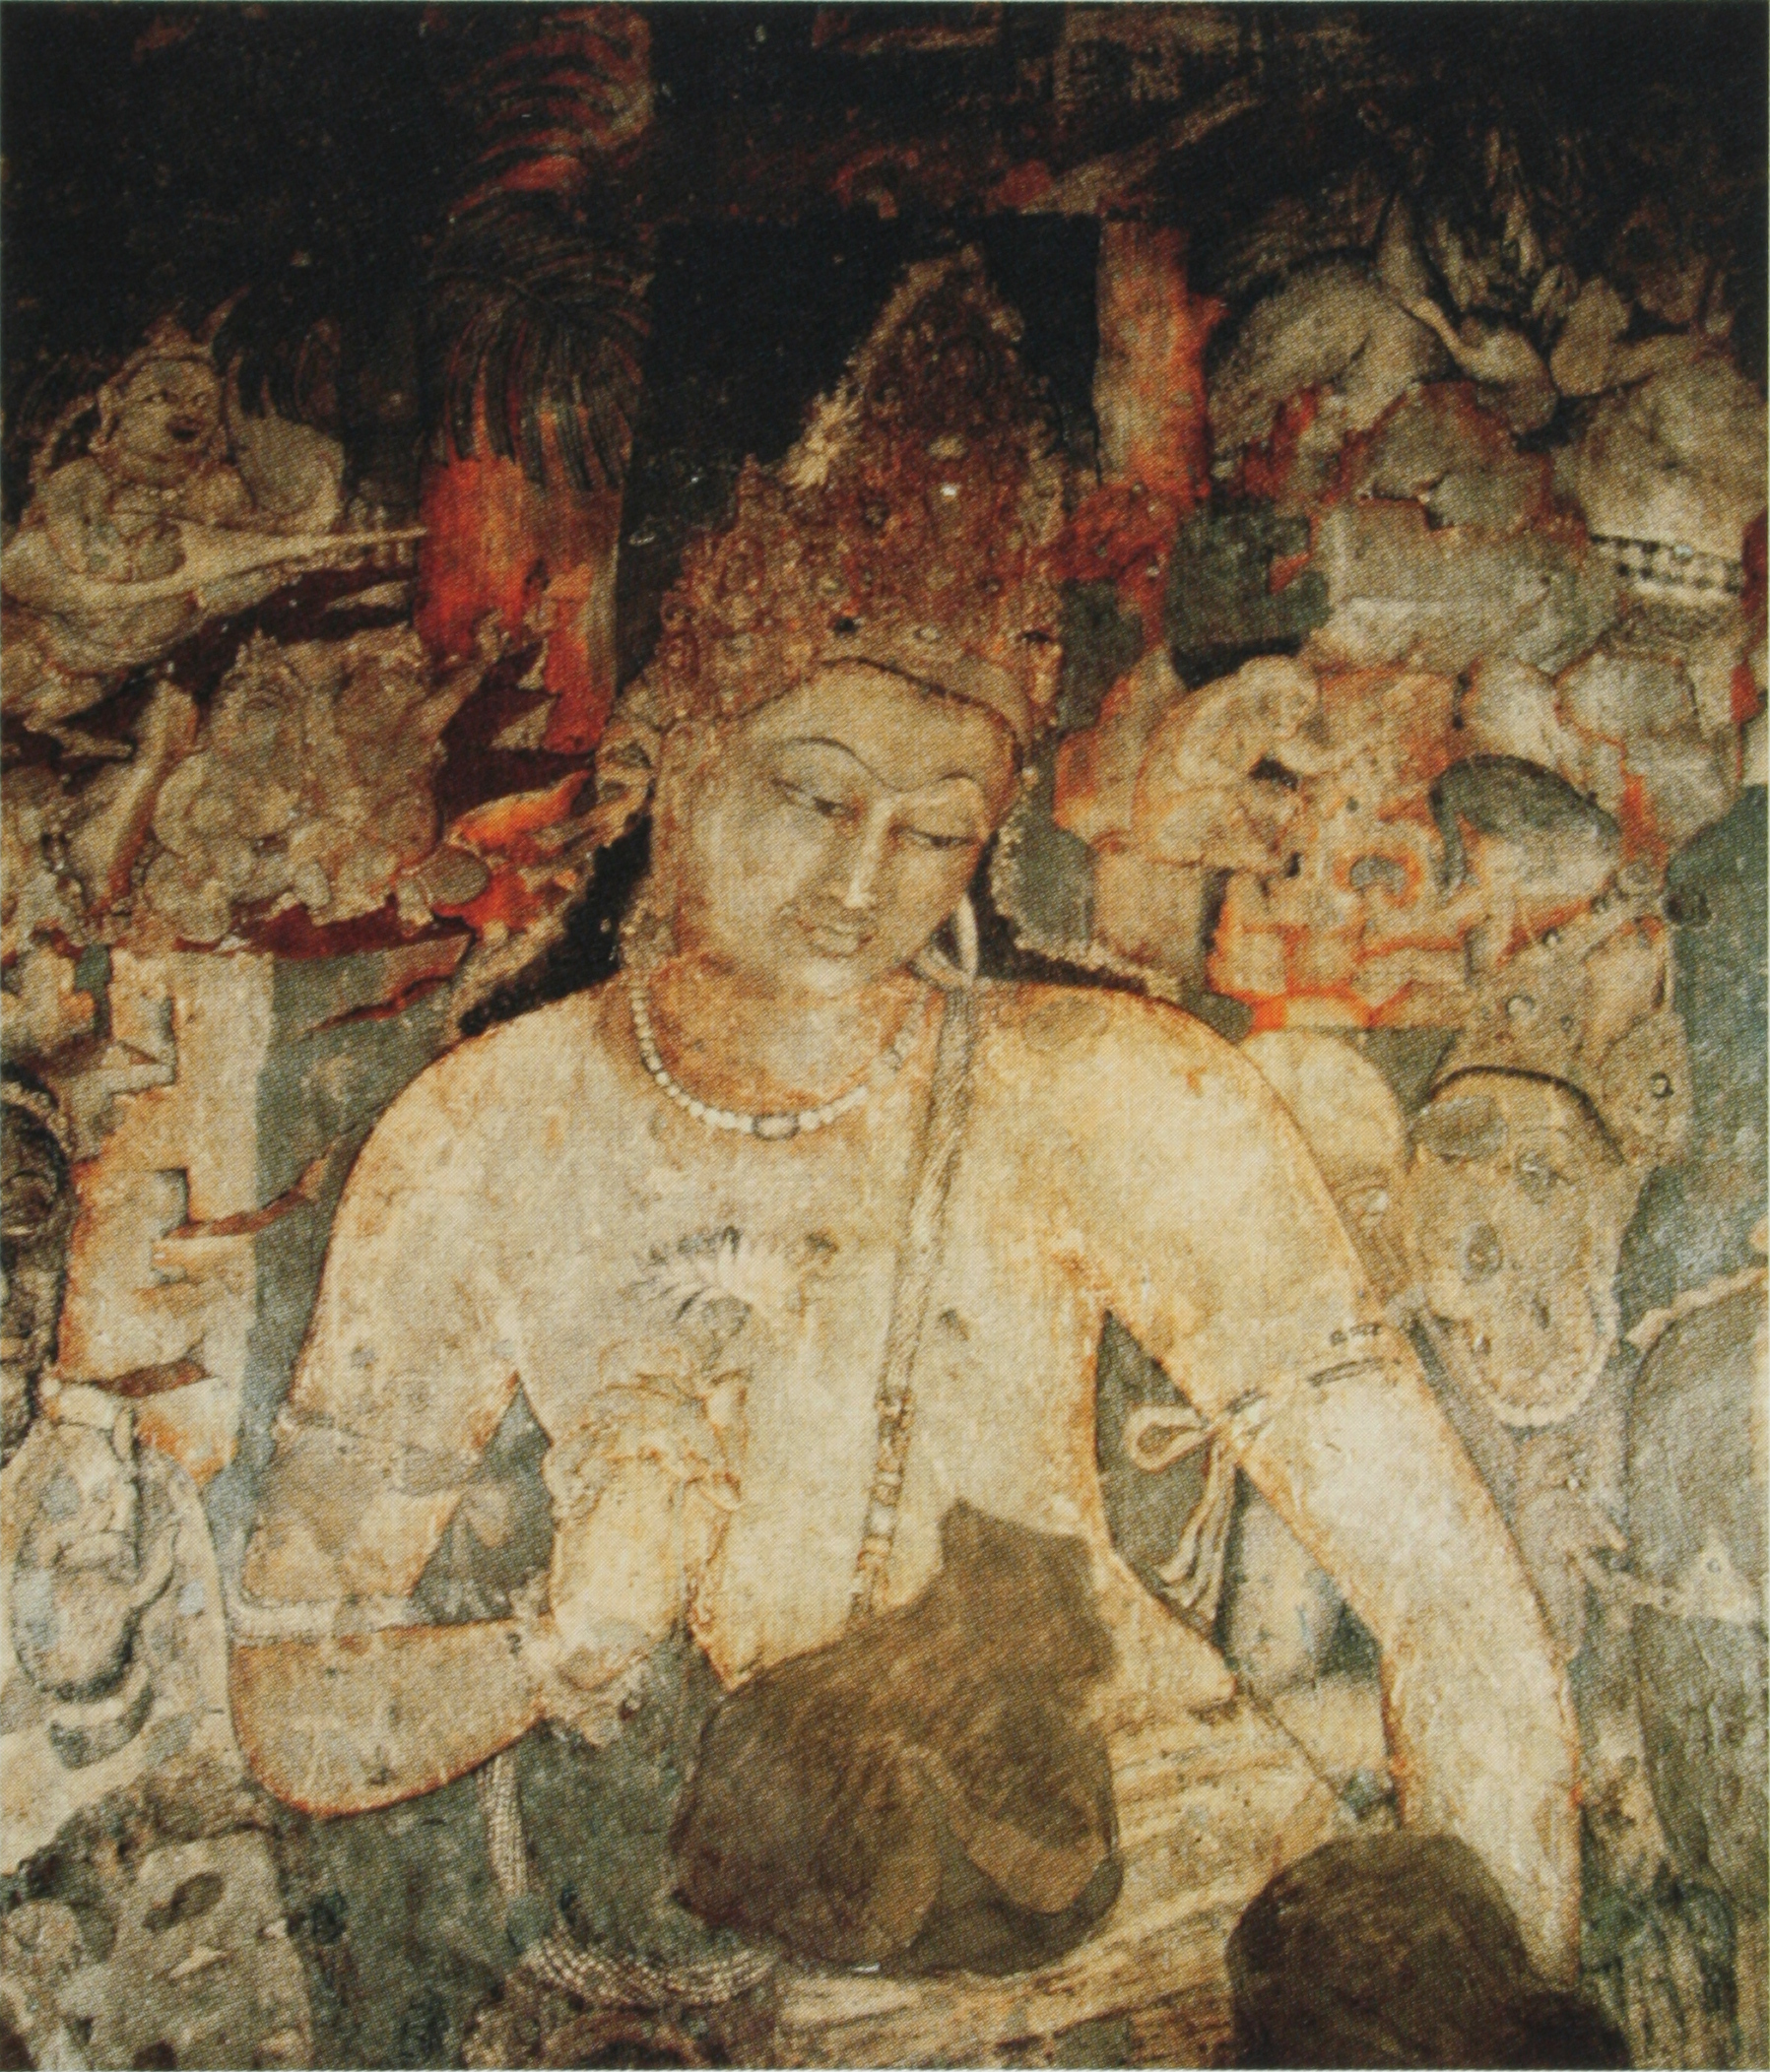 Boddhisattva Padmapani